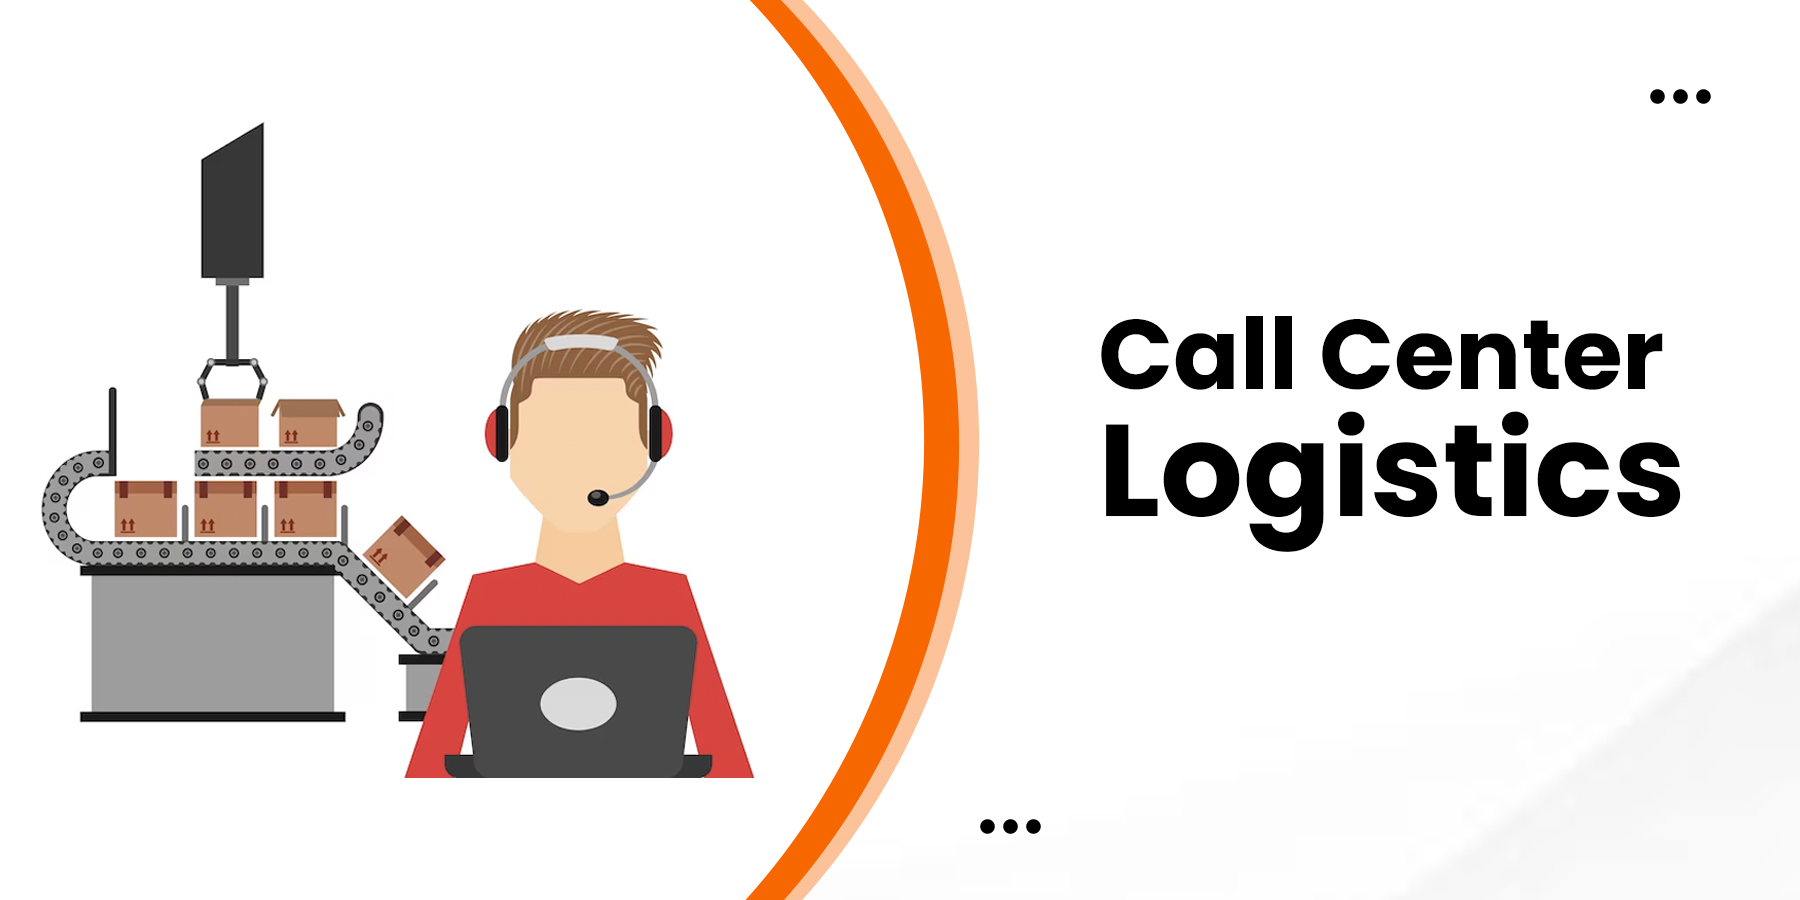 Call Center Logistics